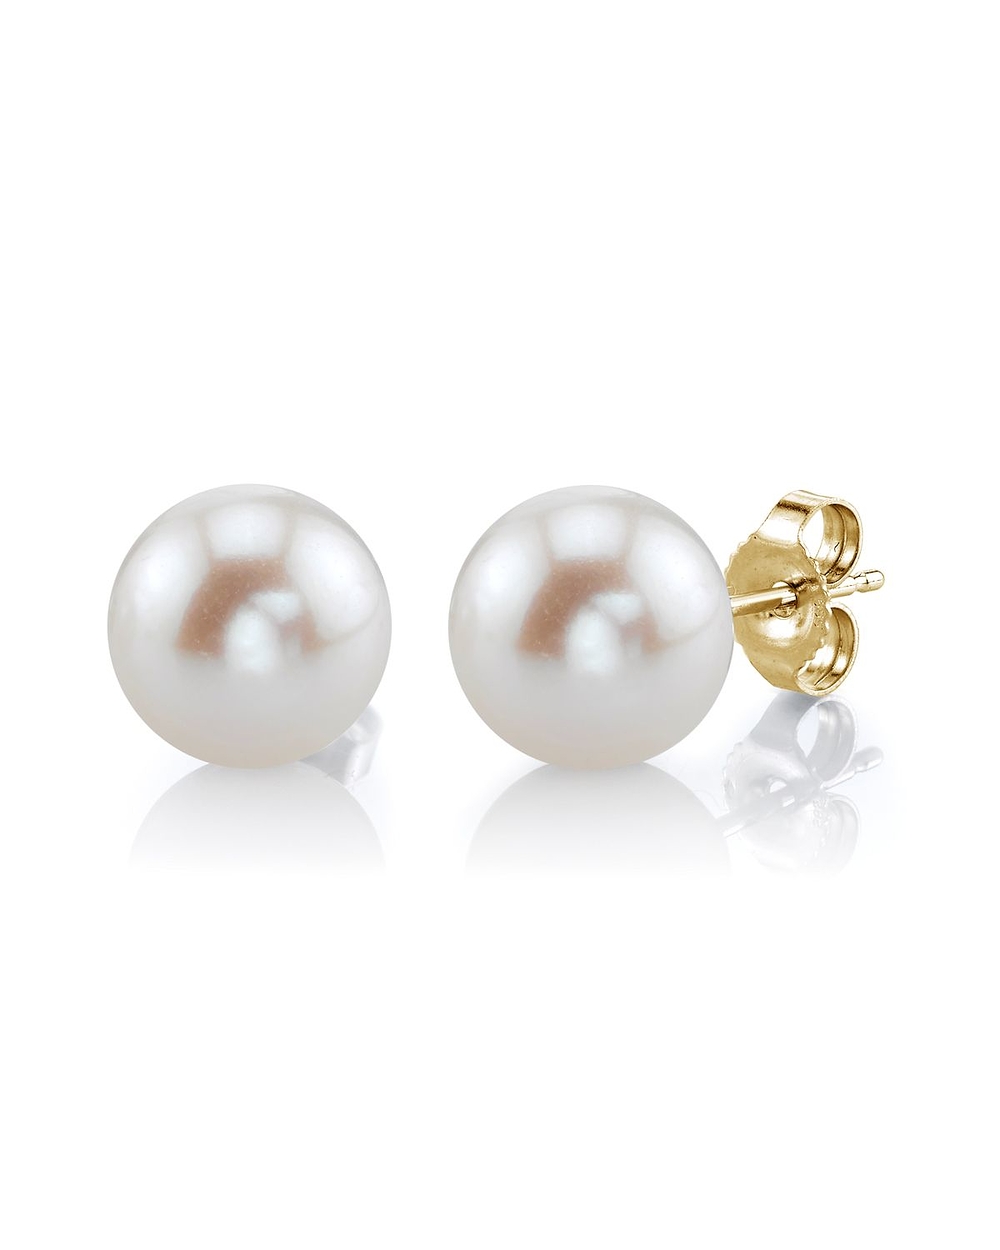 pearl earrings 7mm white freshwater pearl stud earrings rxgfpuk